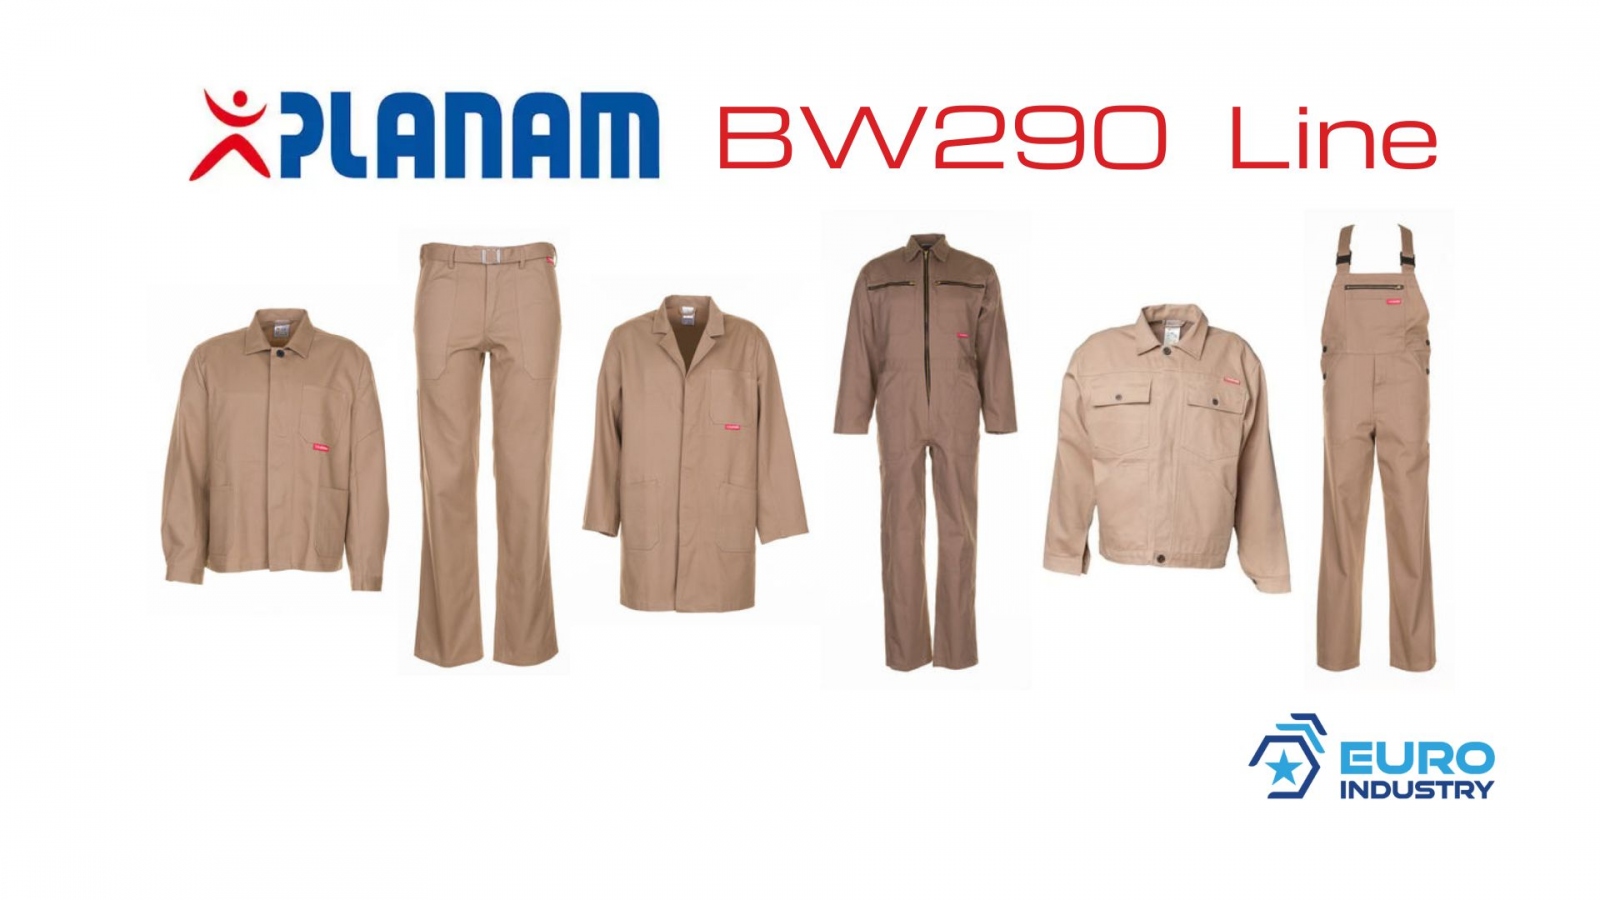 pics/Planam/0155/planam-bw-290-linie-beige-khaki-baumwolle-details.jpg